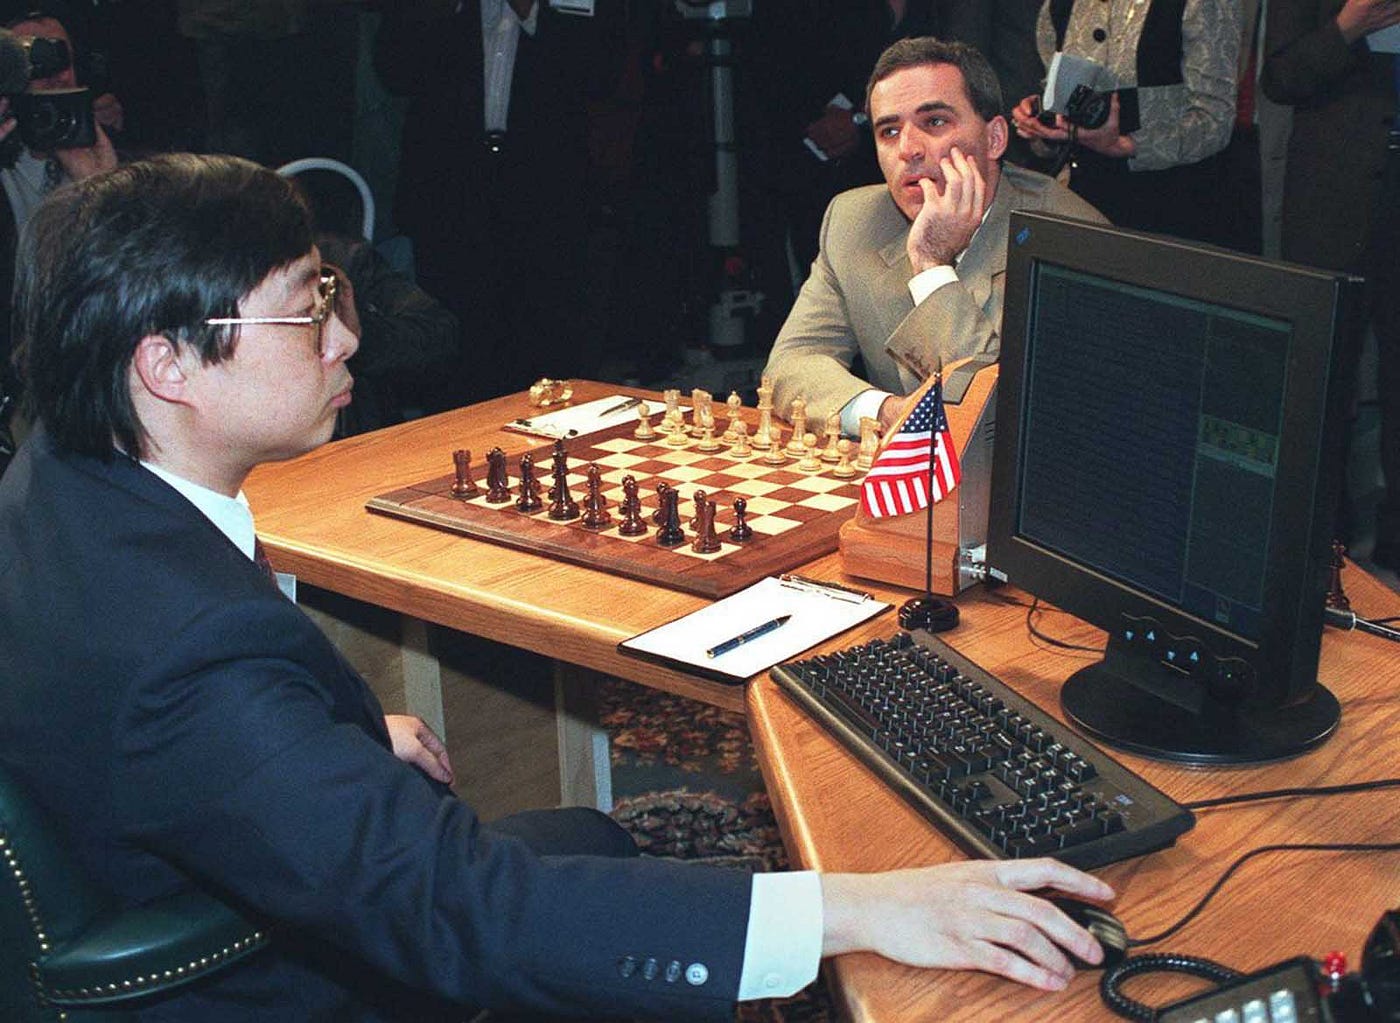 O Teste do Tempo - Garry Kasparov